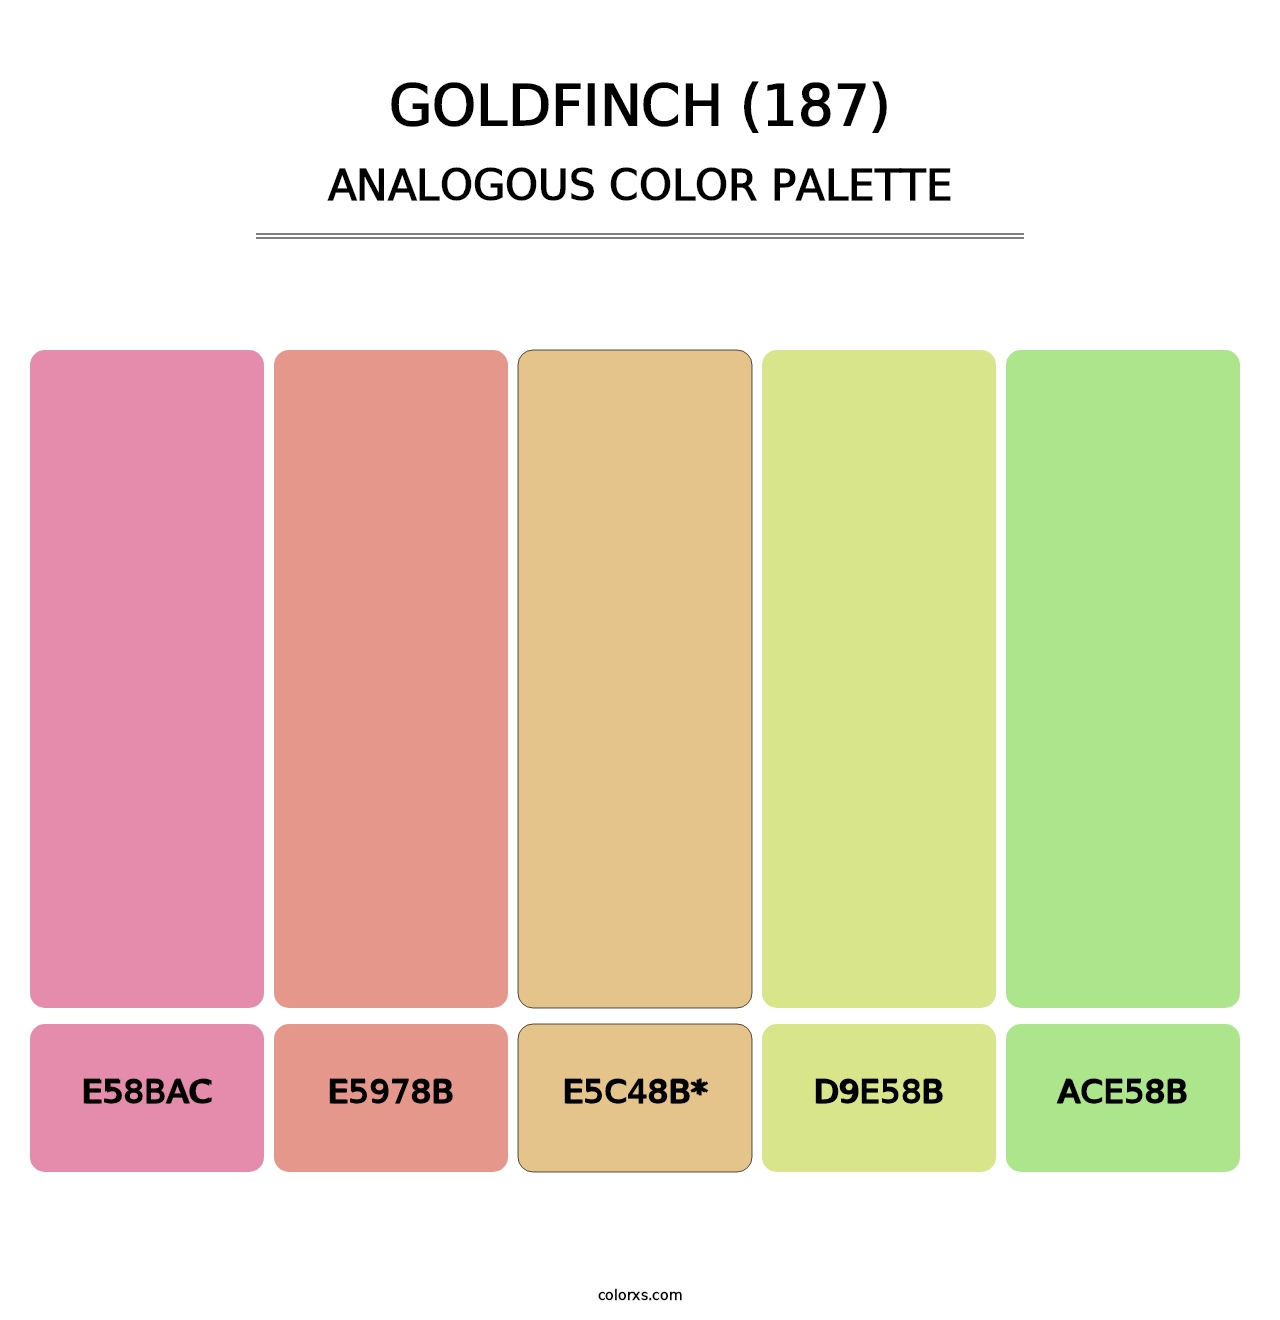 Goldfinch (187) - Analogous Color Palette